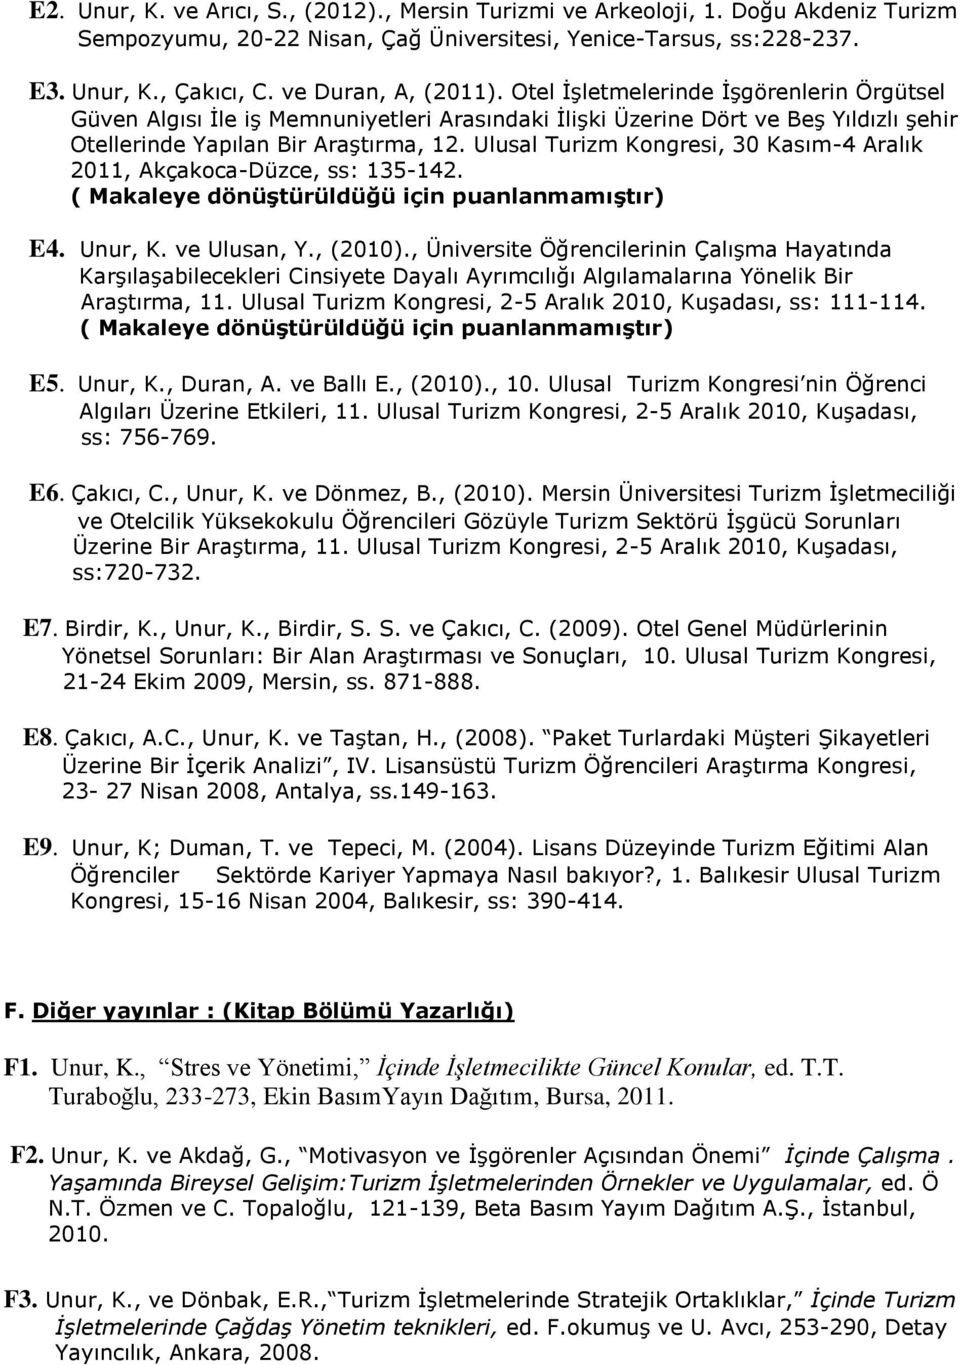 Ulusal Turizm Kongresi, 30 Kasım-4 Aralık 2011, Akçakoca-Düzce, ss: 135-142. ( Makaleye dönüştürüldüğü için puanlanmamıştır) E4. Unur, K. ve Ulusan, Y., (2010).